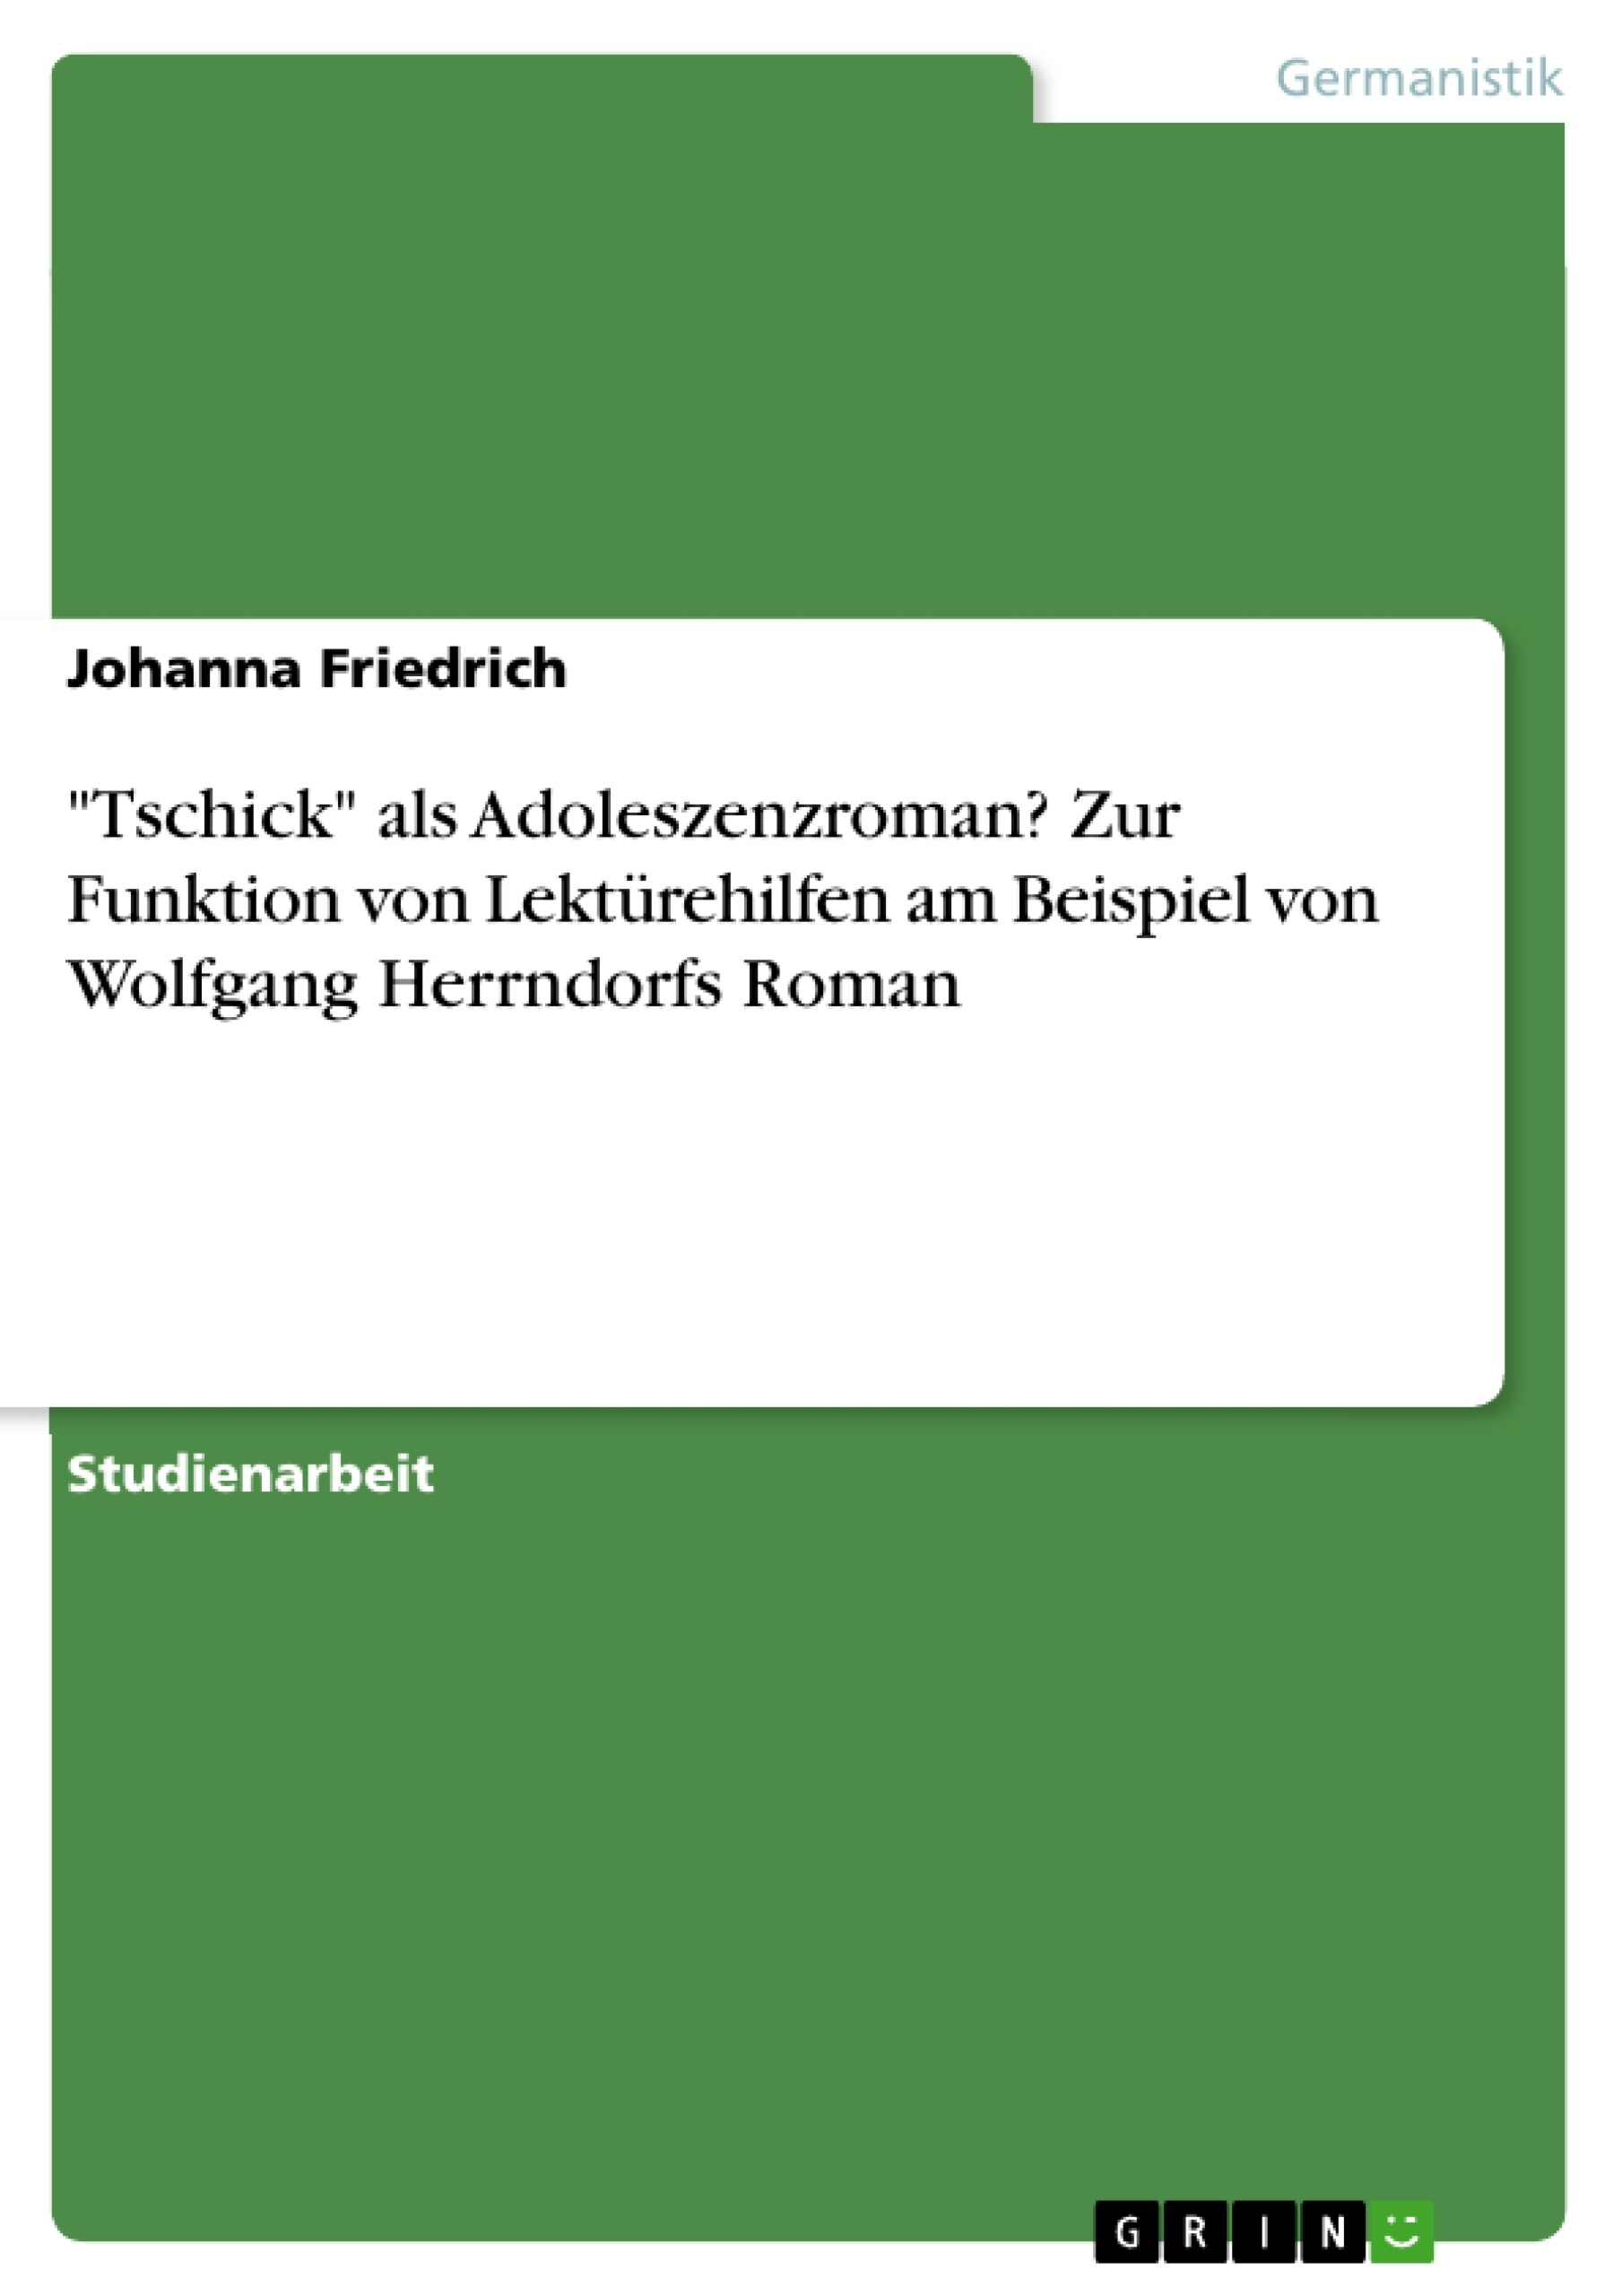 Título: "Tschick" als Adoleszenzroman? Zur Funktion von Lektürehilfen am Beispiel von Wolfgang Herrndorfs Roman